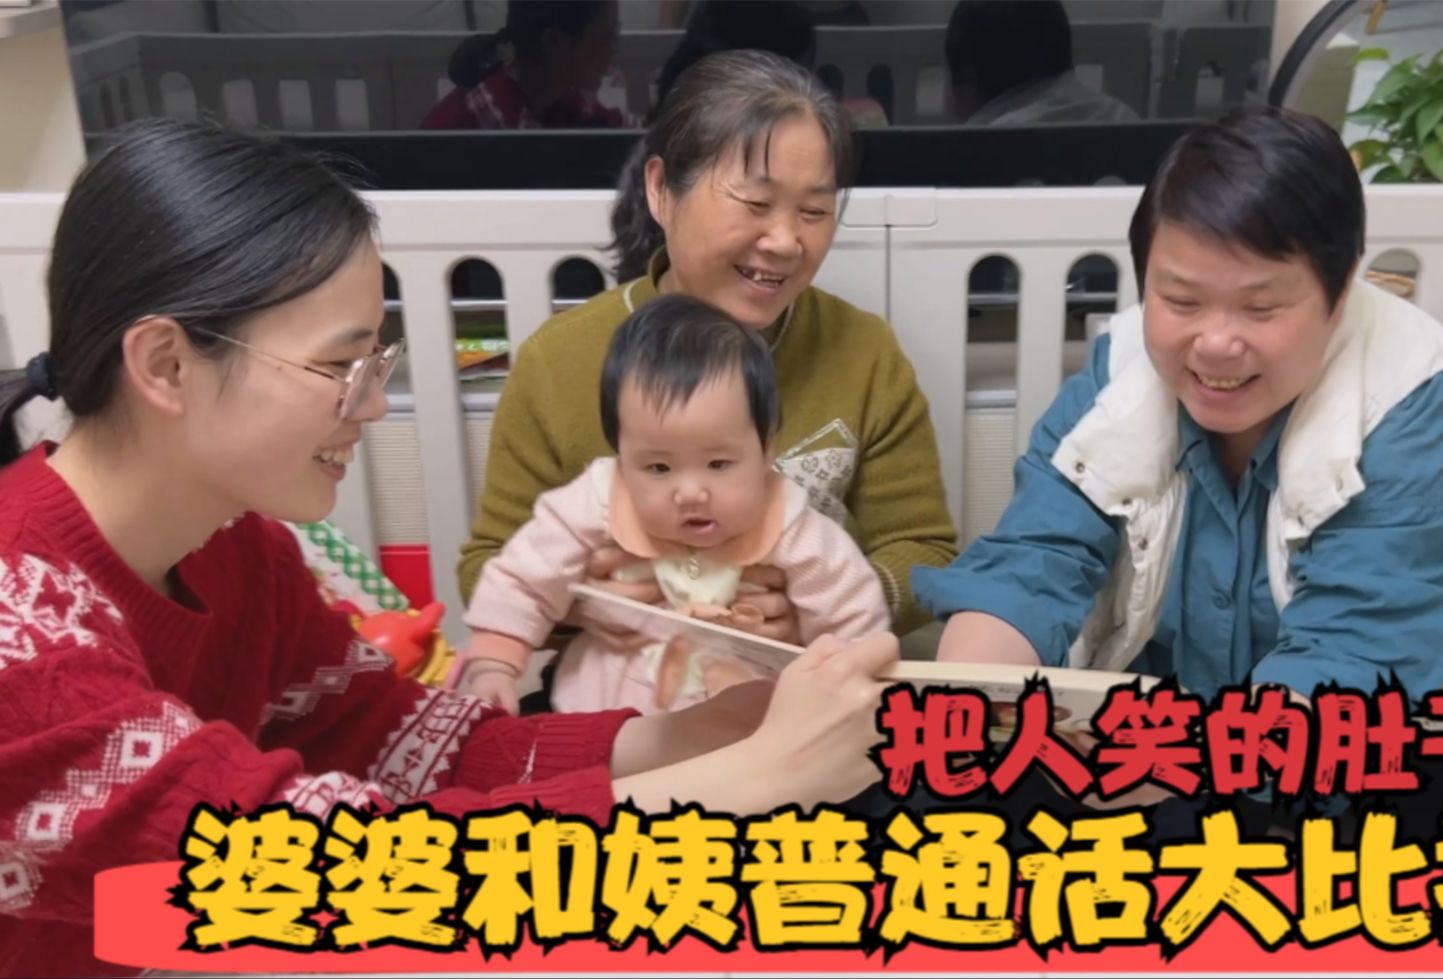 姨来北京带娃苦练普通话，还主动向婆婆挑战，姐妹把人逗得哈哈笑